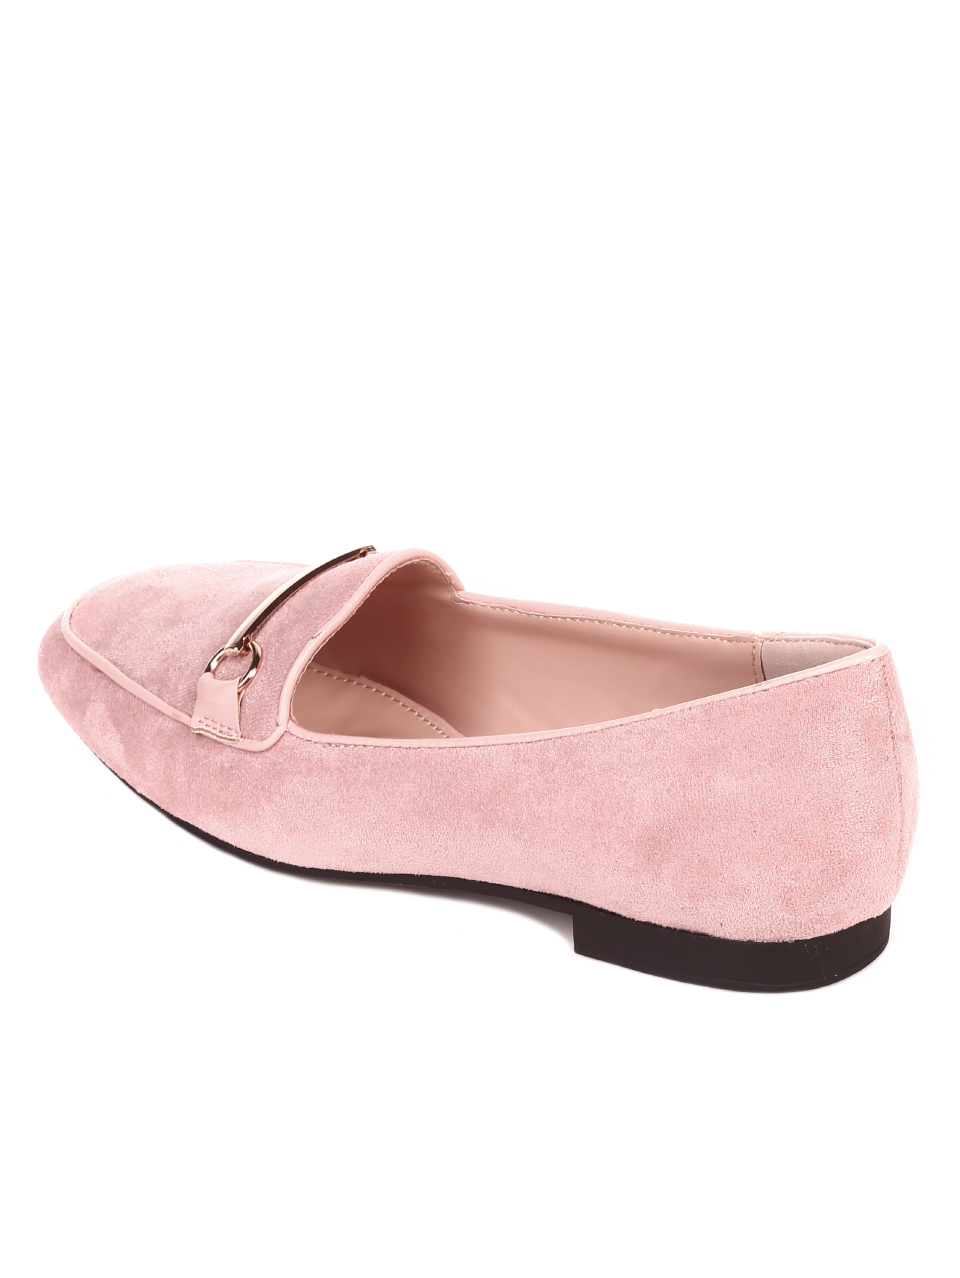 Ежедневни дамски обувки в розово 3M-21822 pink